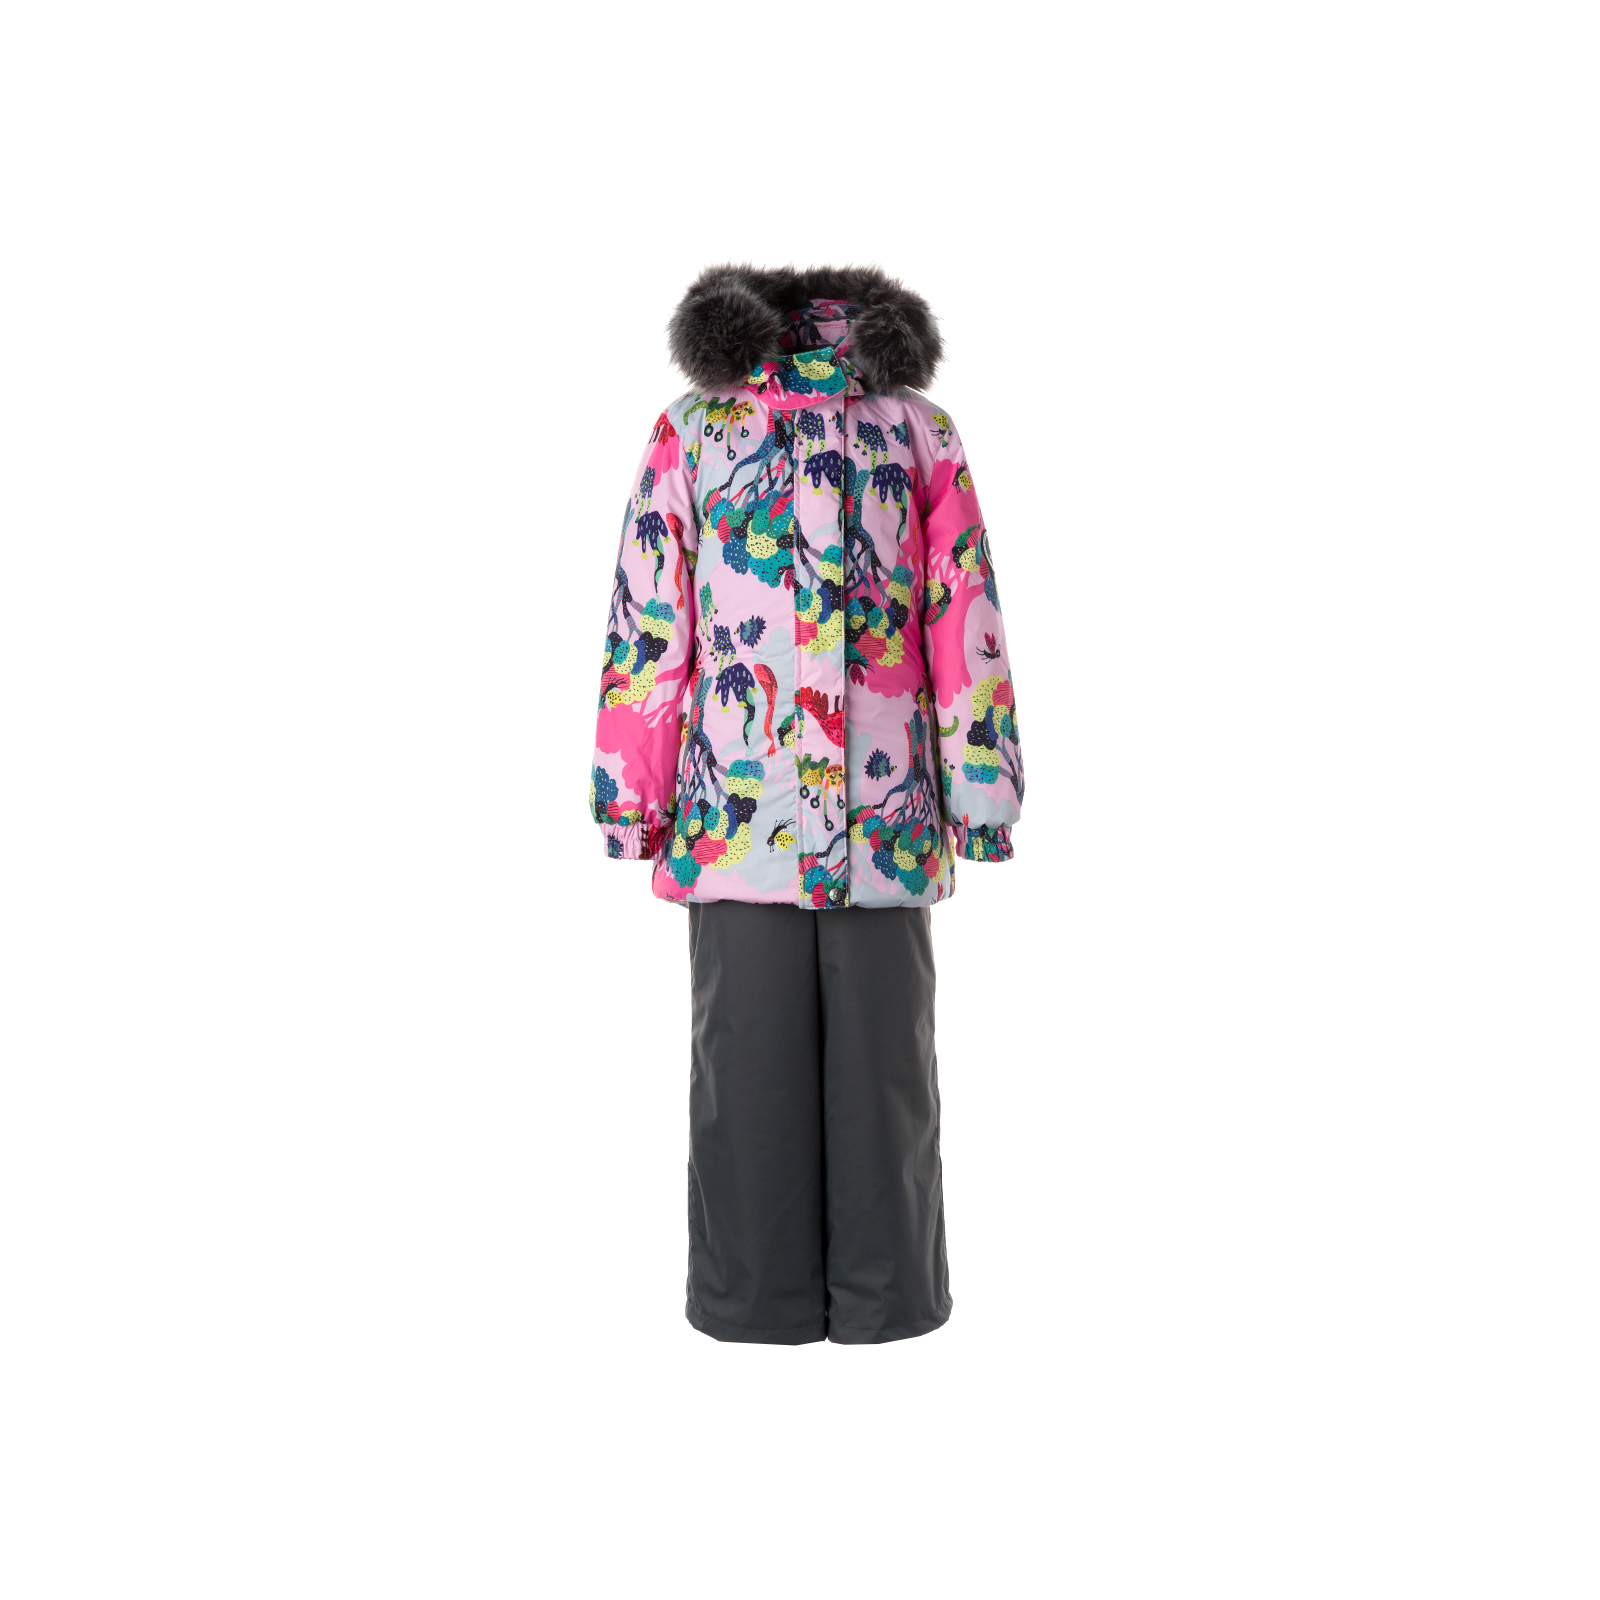 Комплект верхней одежды Huppa RENELY 2 41850230 cветло-розовый с принтом/серый 86 (4741468977713)